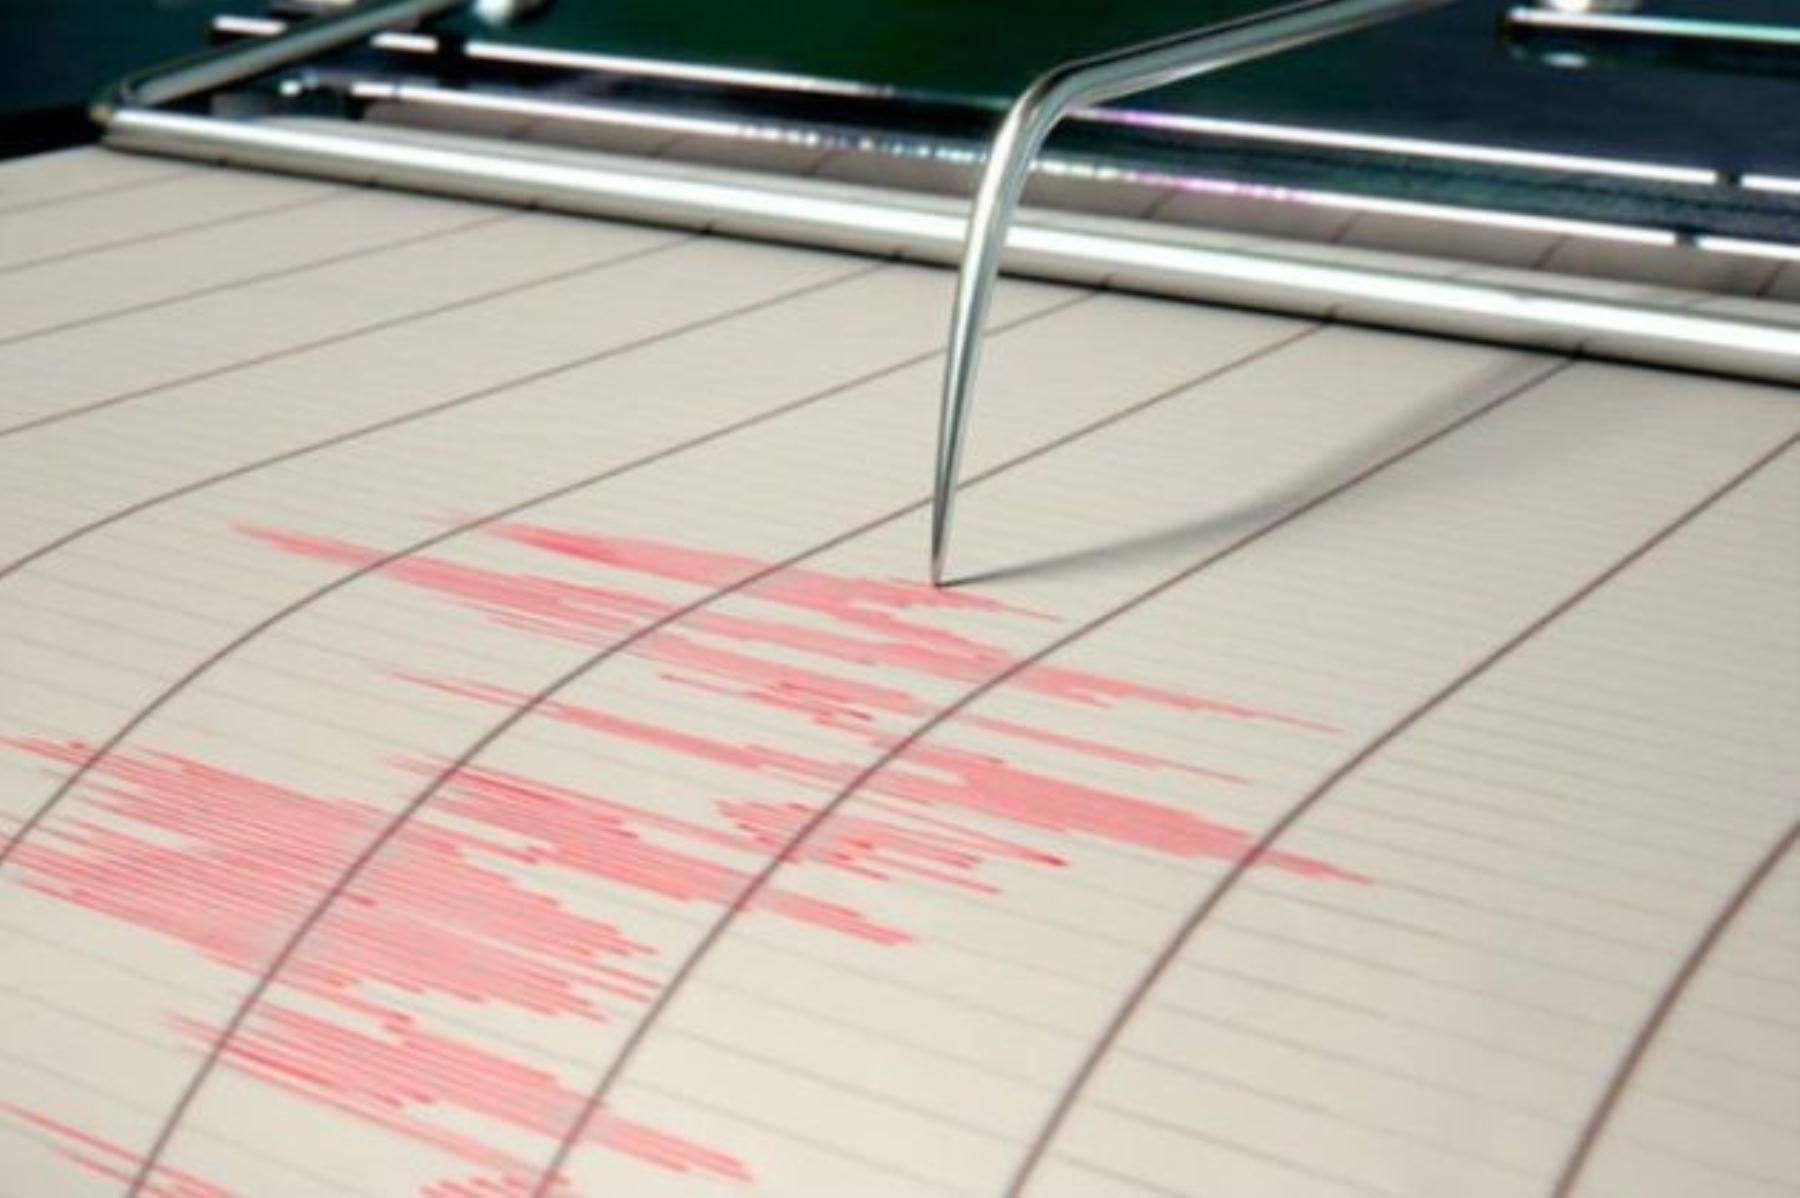 Esta noche se registró un sismo de magnitud 3.8 en el distrito de Ilabaya, en la región Tacna. Twitter